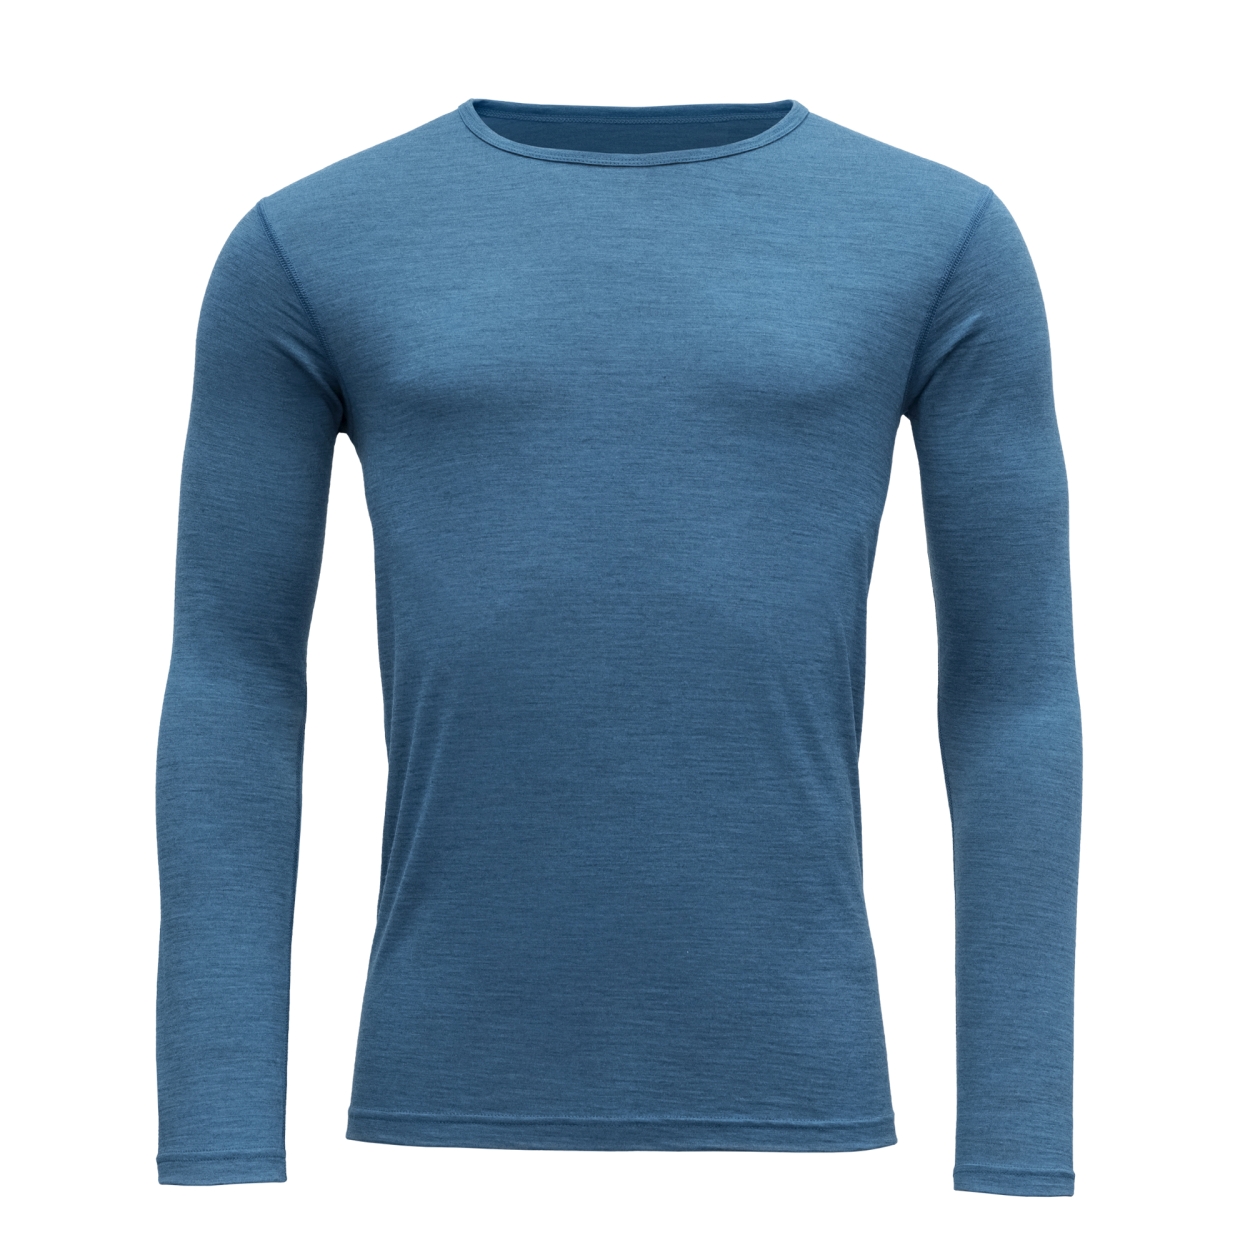 Breeze Man Shirt, blue melange